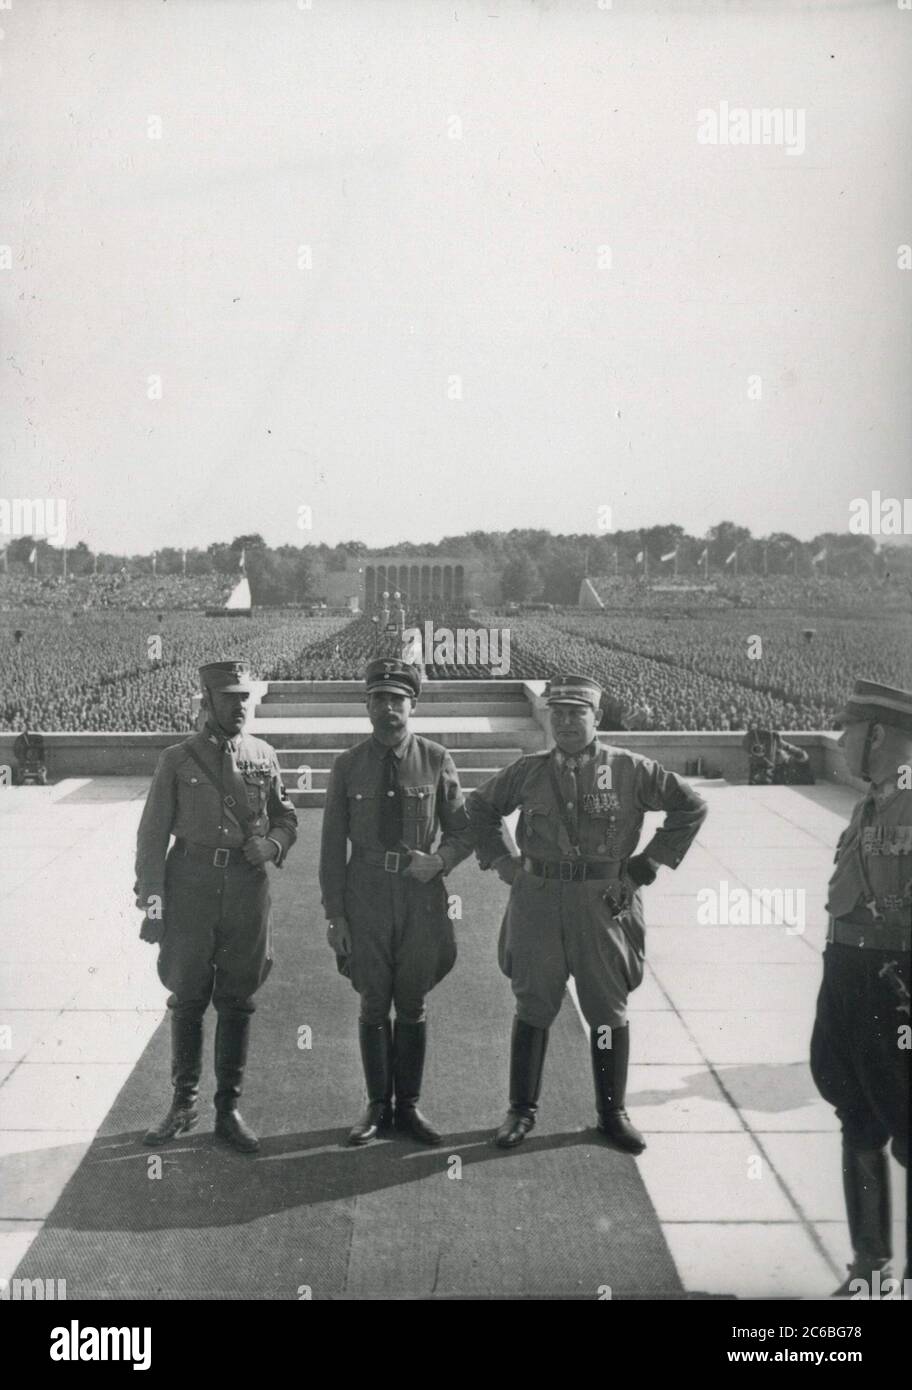 Supreme SA - leader Pepper, Rudolf Hess, Goering al Congresso del Partito nazista di Norimberga Heinrich Hoffmann Fotografie 1934 fotografo ufficiale di Adolf Hitler, e un politico nazista e editore, che era un membro del circolo intimo di Hitler. Foto Stock